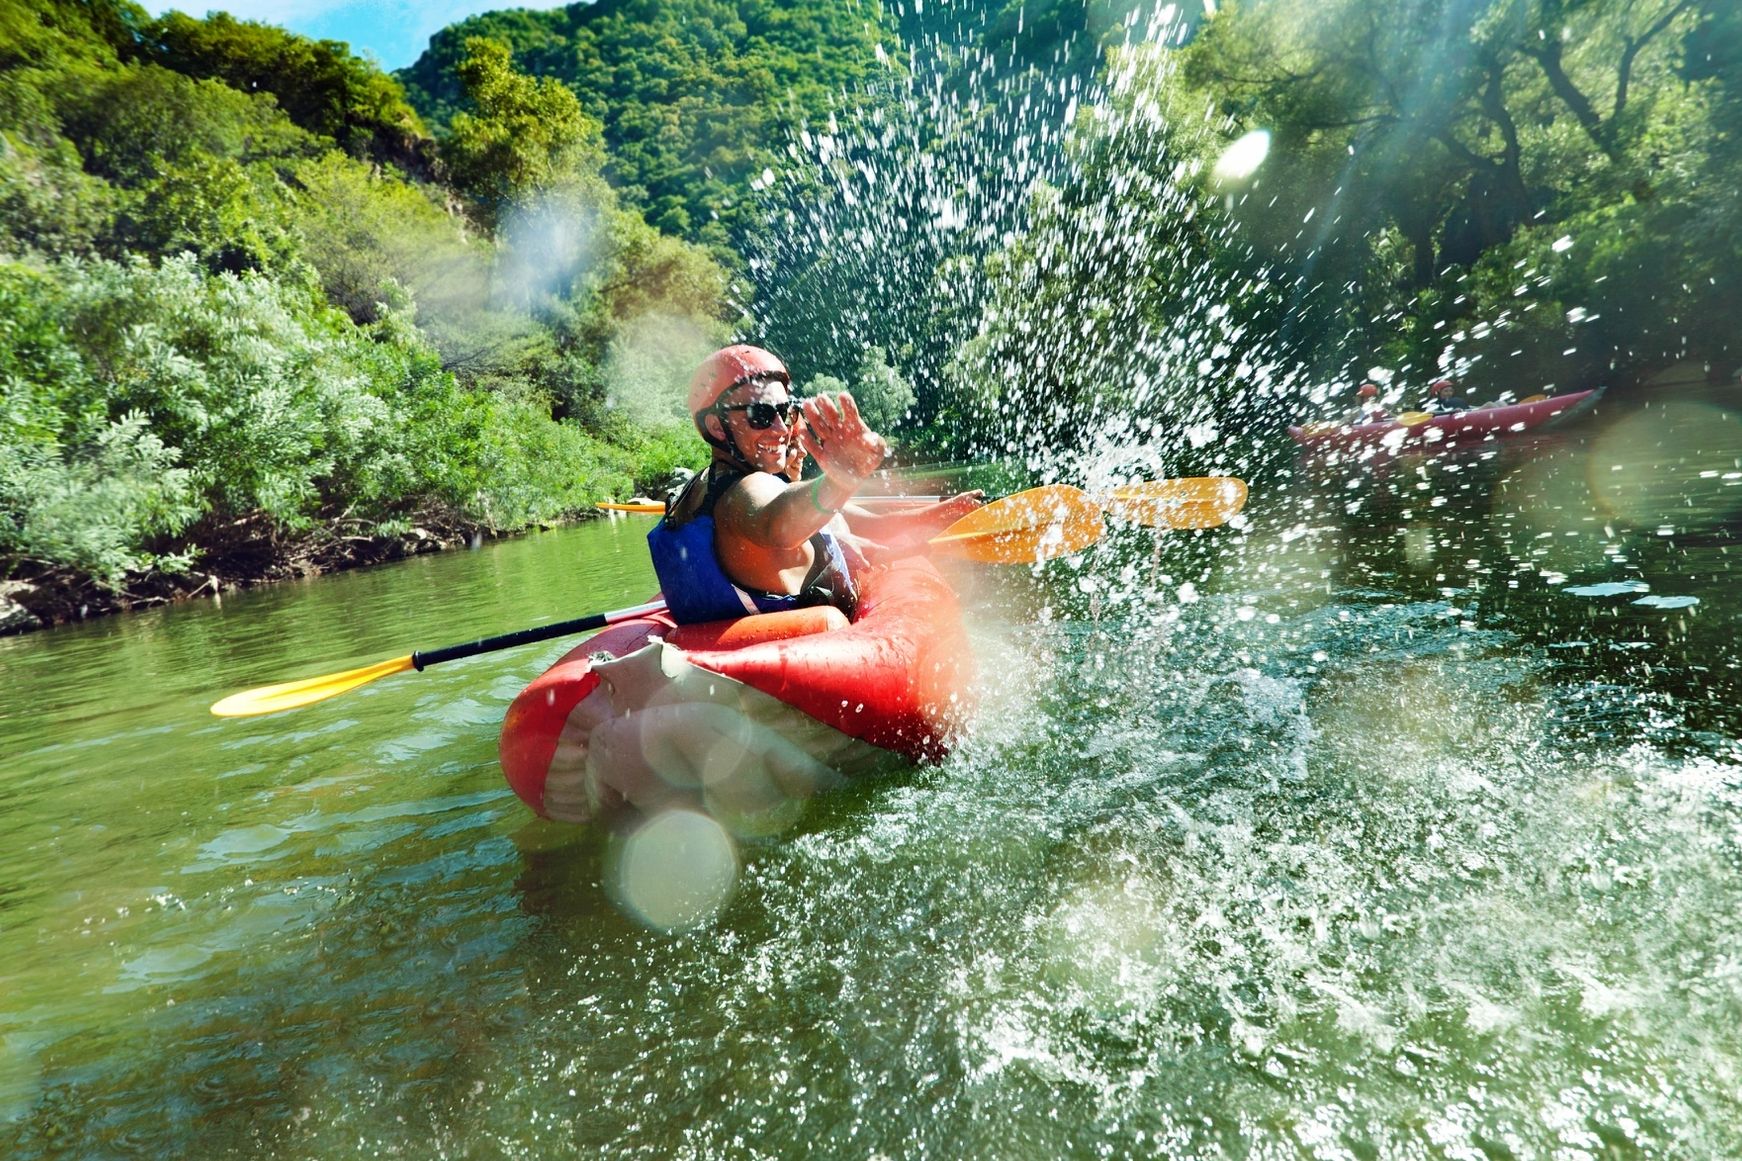 Man kayaking on the river splashing water at the camera